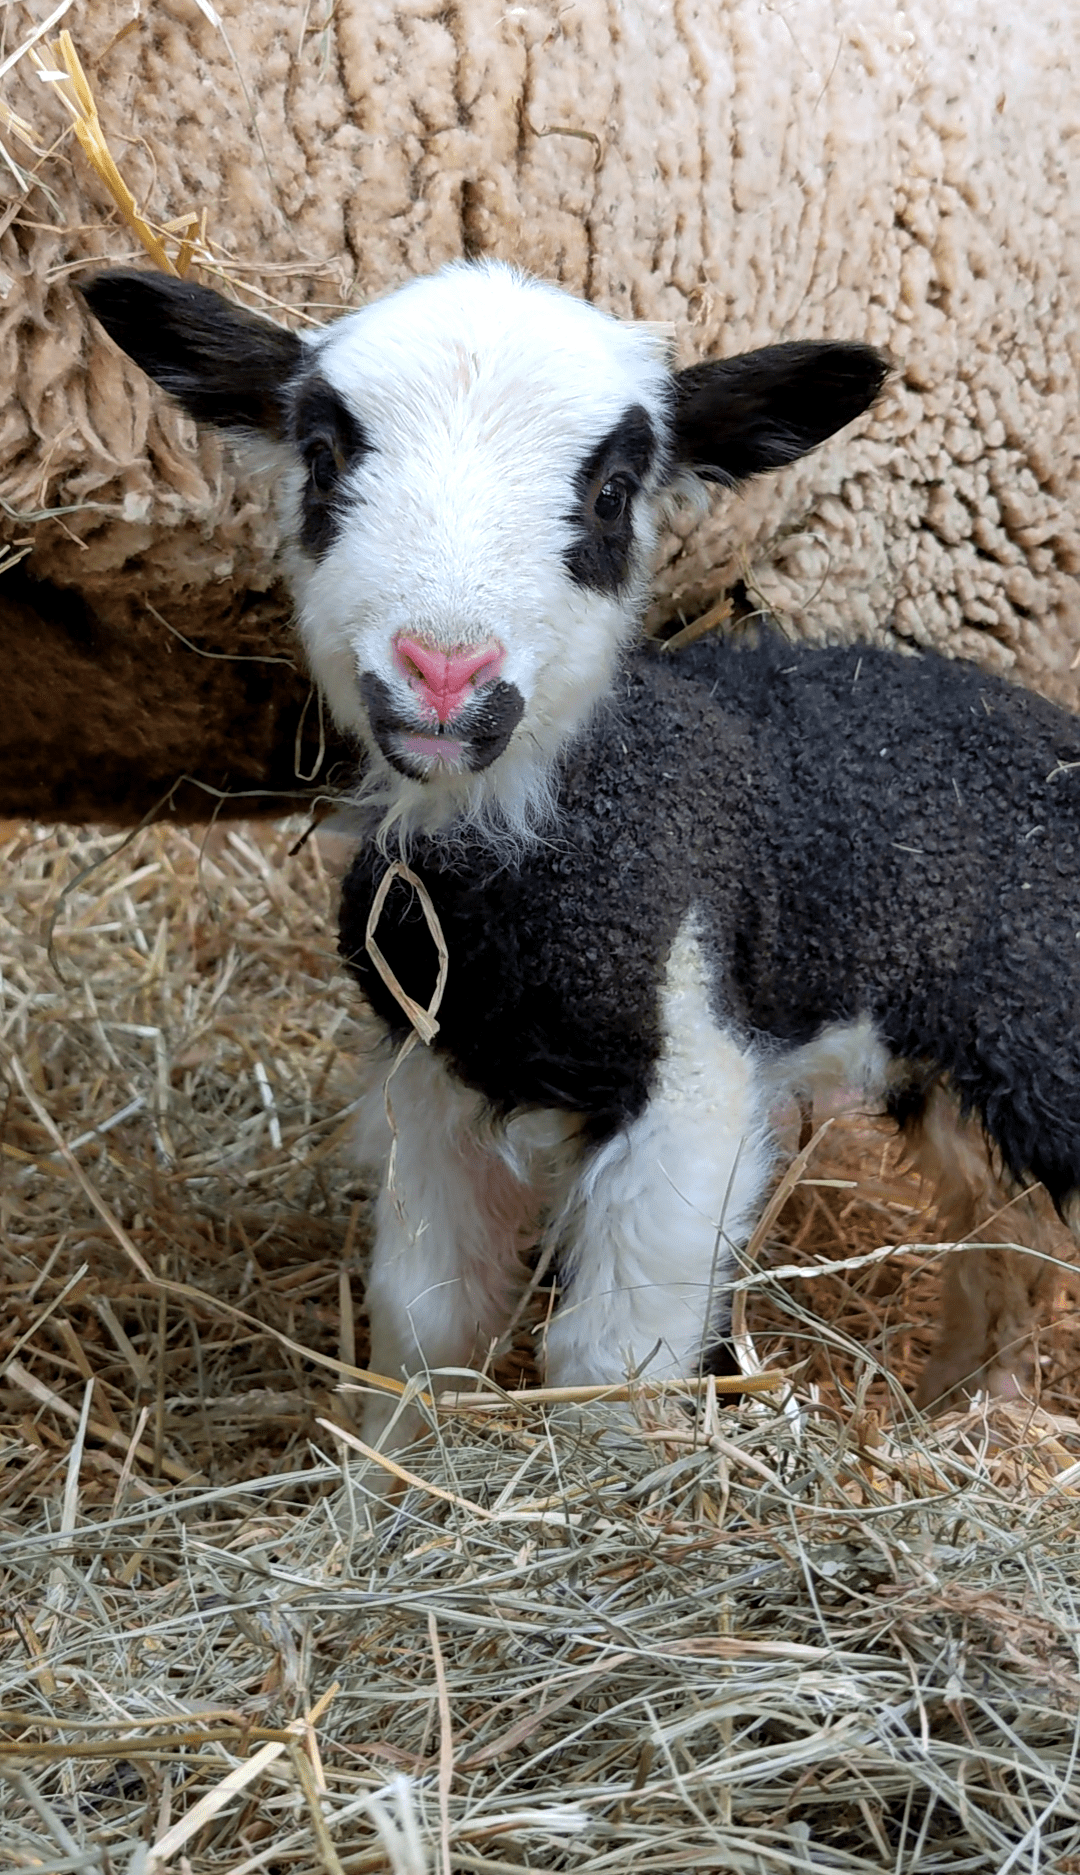 A new lamb at Seairra's farm